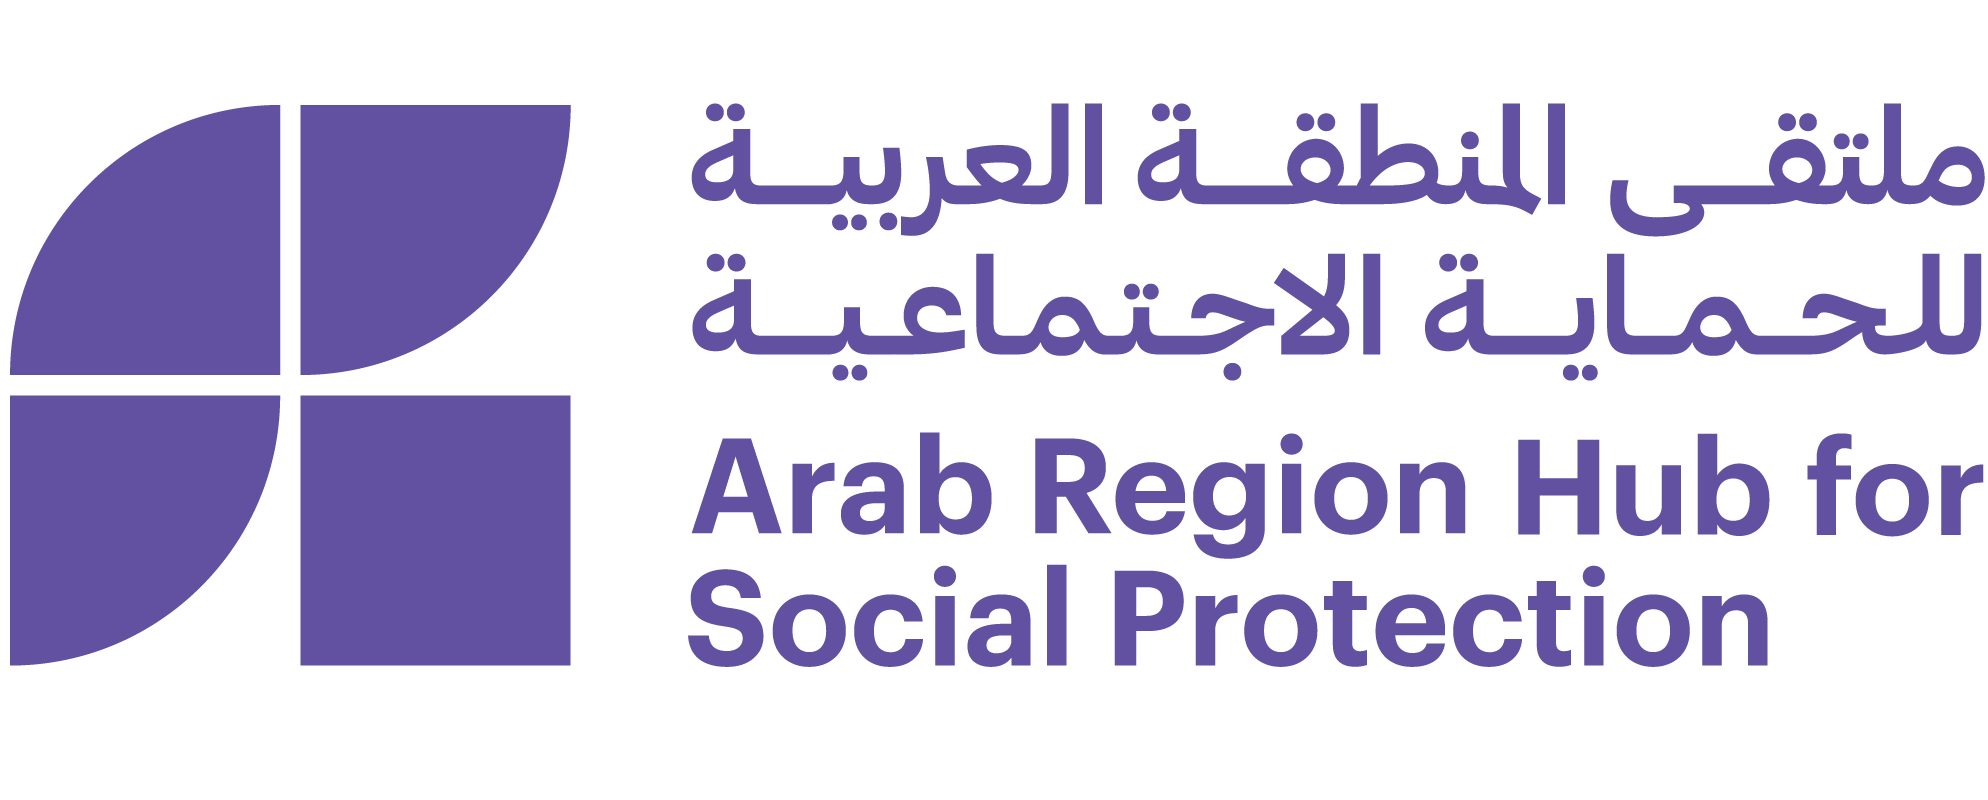 Arab Region Hub for Social Protection